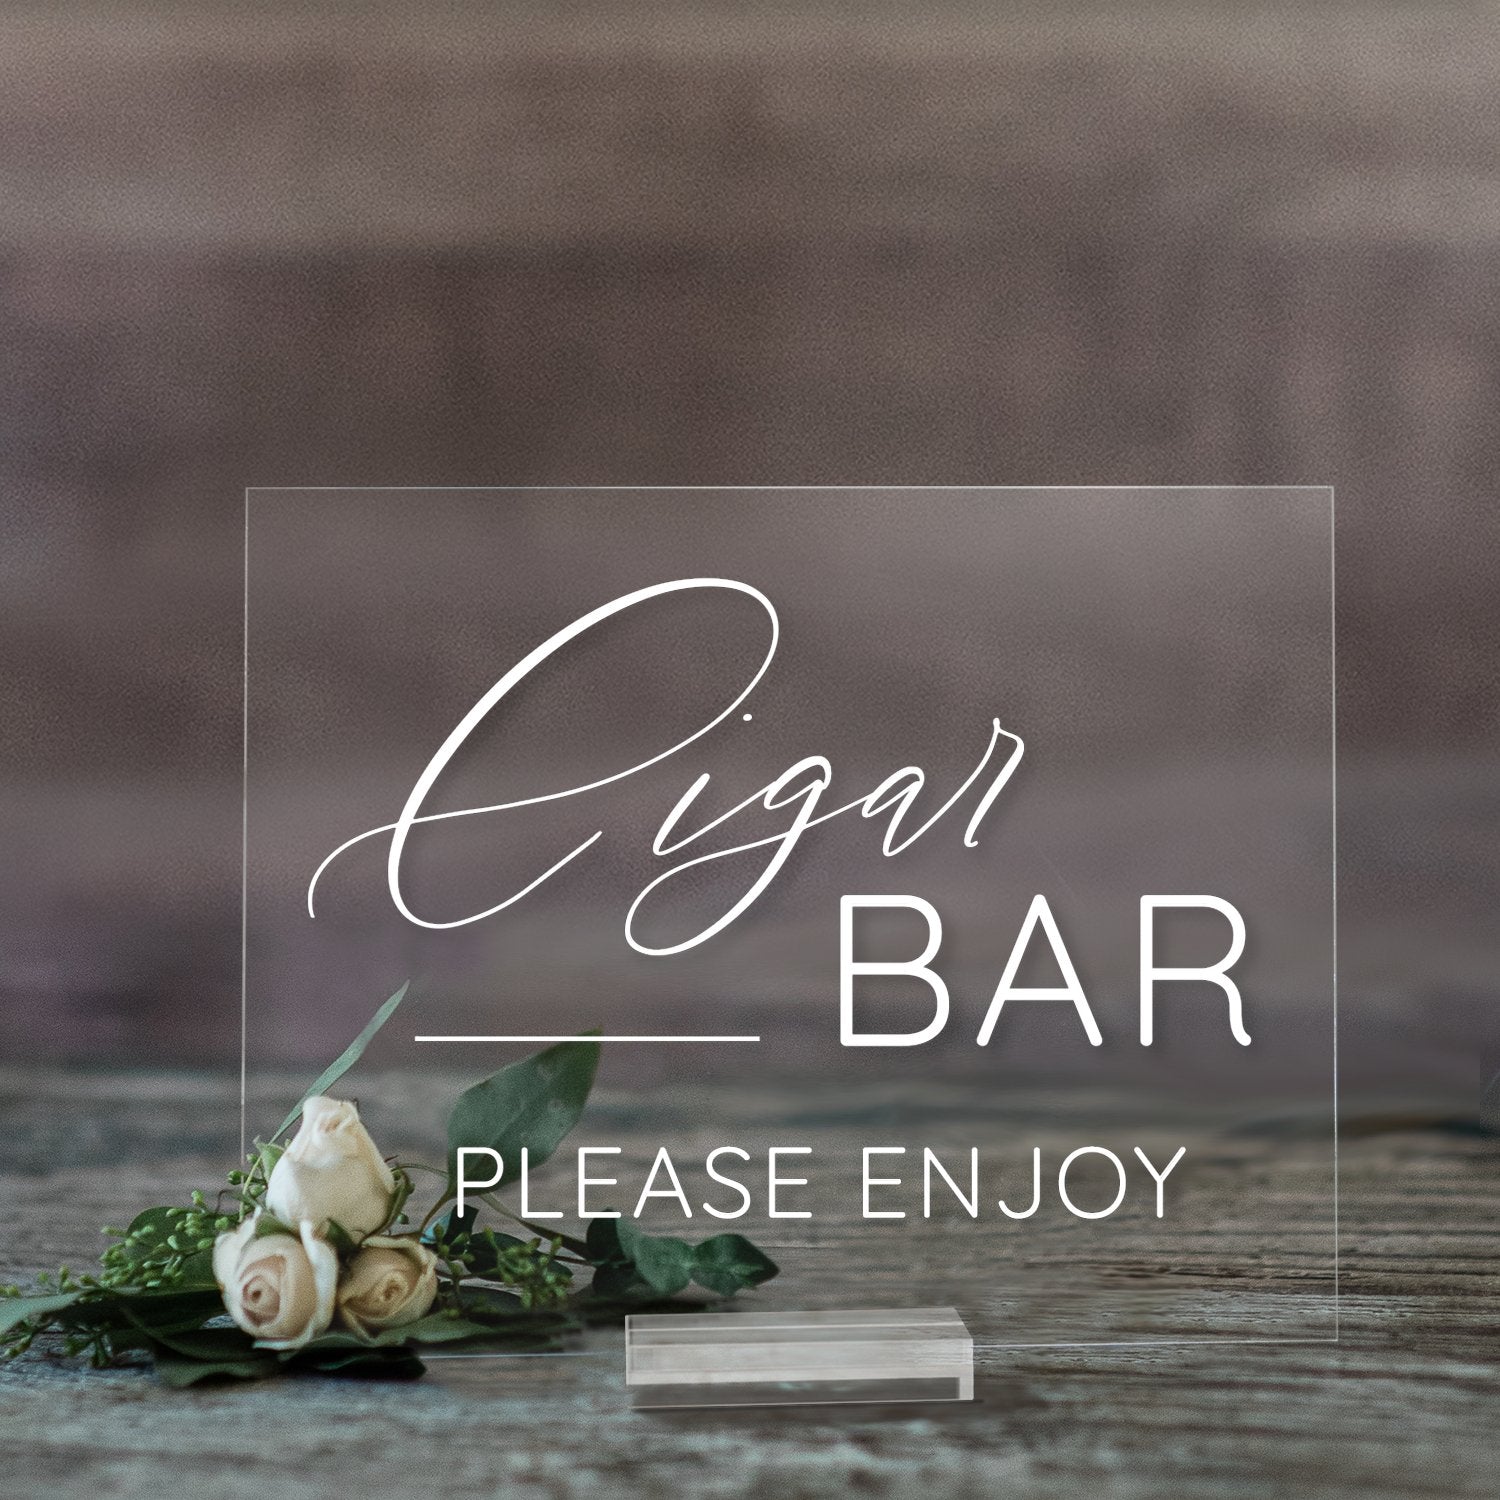 Acrylic Cigar Bar Sign | Wedding Decor | SCC-279 - SCC Signs